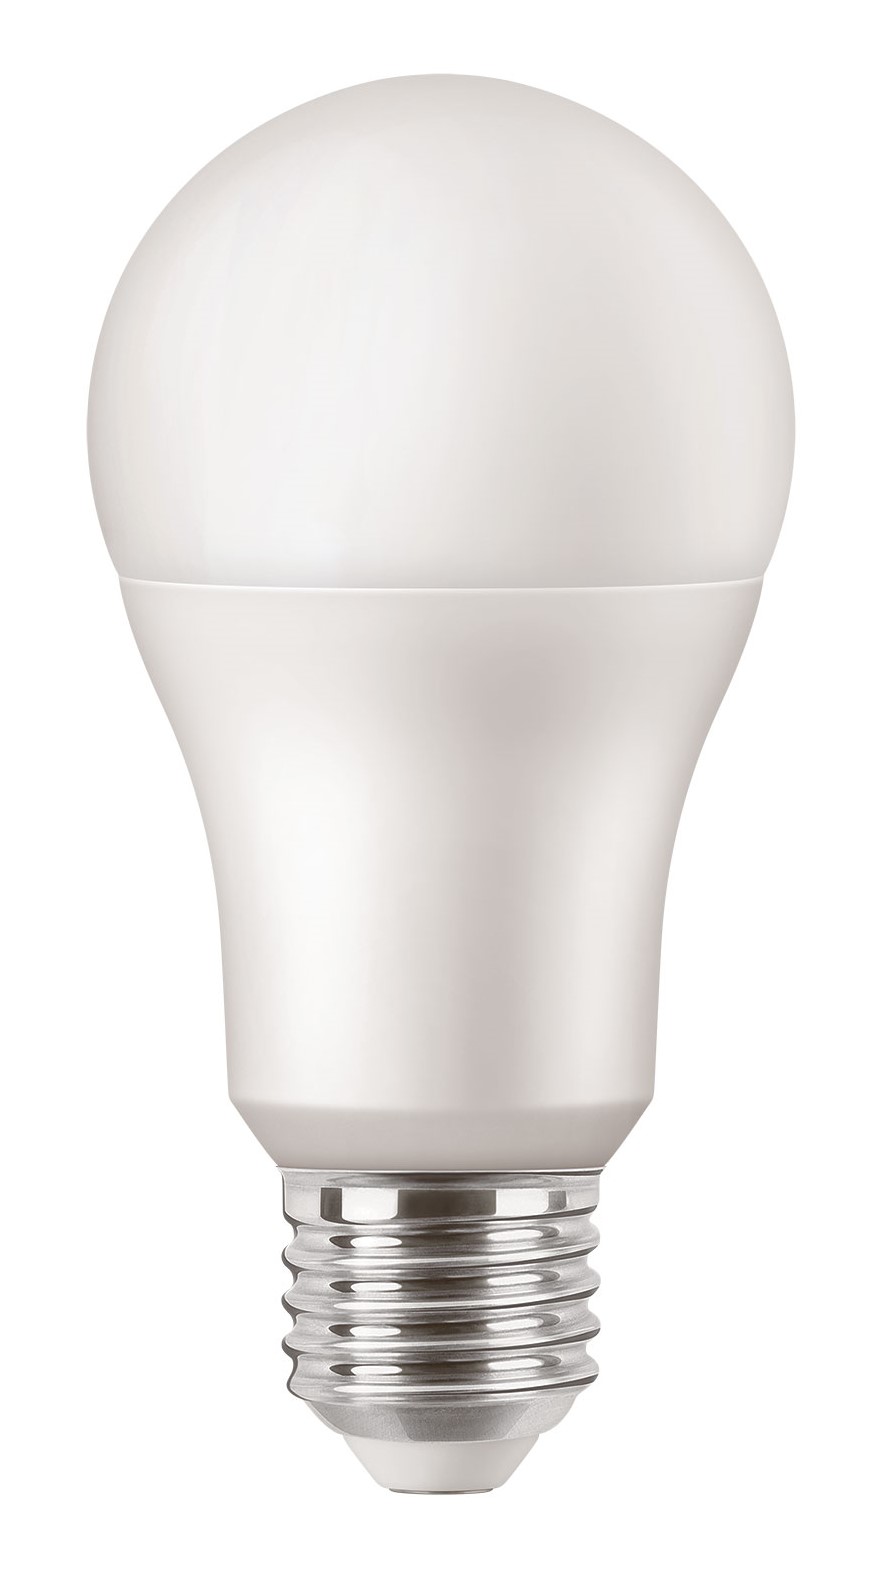 MAZDA LED LAMP 100W E27 WARM WHITE 2700K 827 